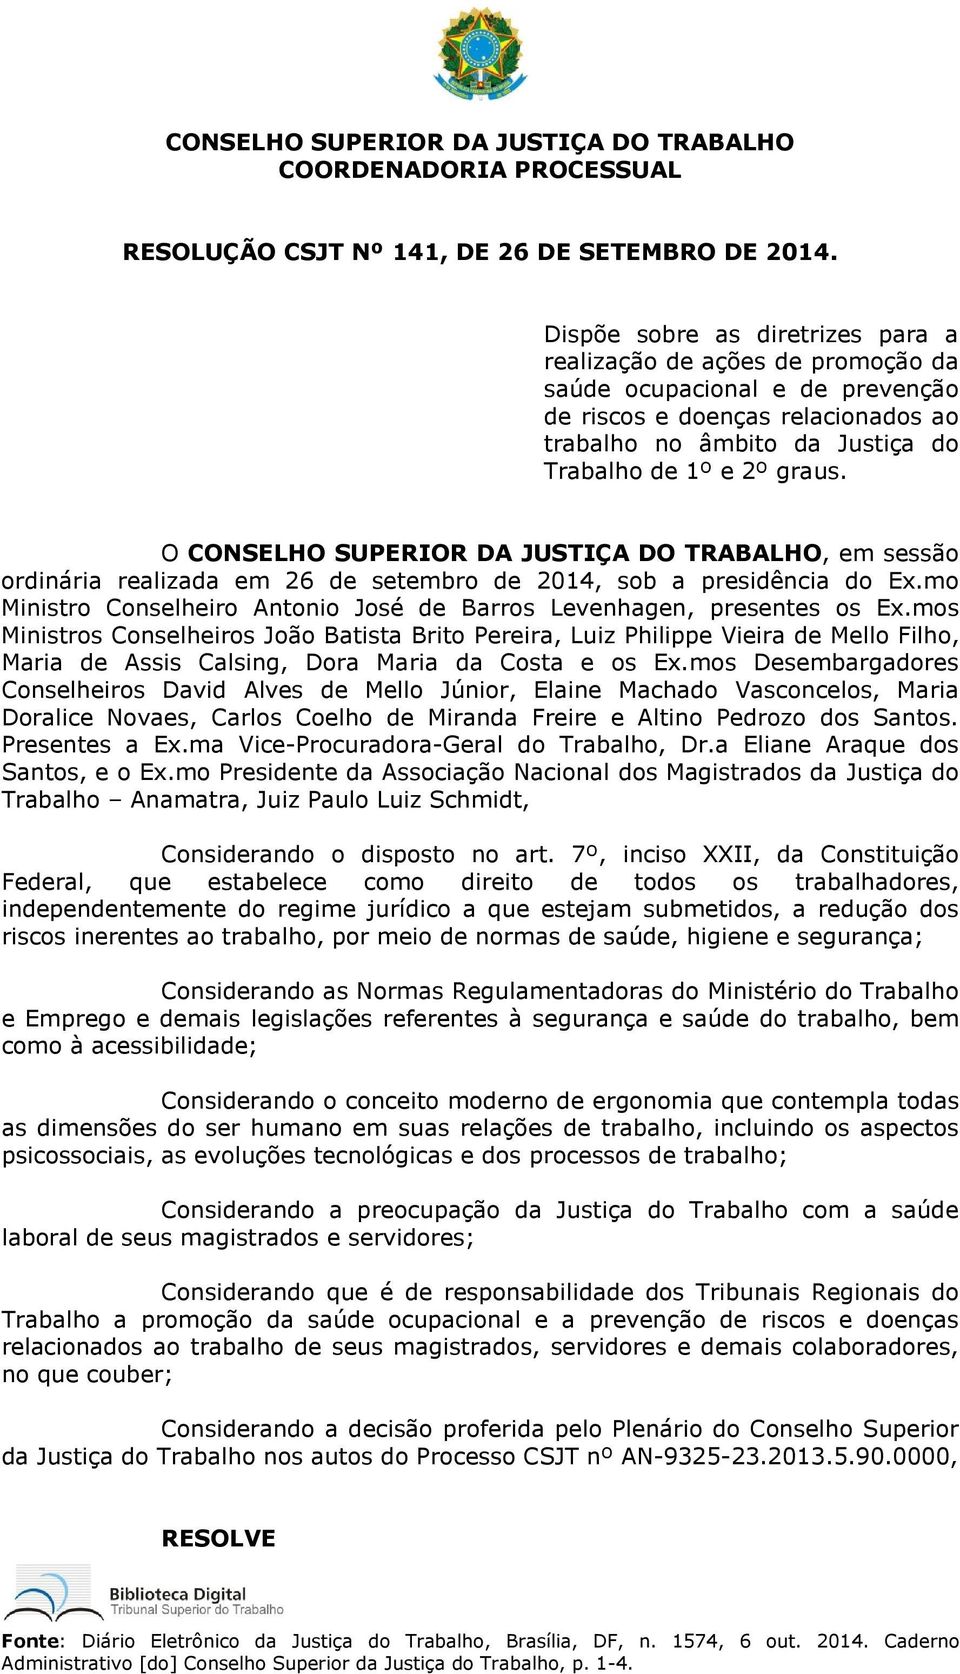 O CONSELHO SUPERIOR DA JUSTIÇA DO TRABALHO, em sessão ordinária realizada em 26 de setembro de 2014, sob a presidência do Ex.mo Ministro Conselheiro Antonio José de Barros Levenhagen, presentes os Ex.